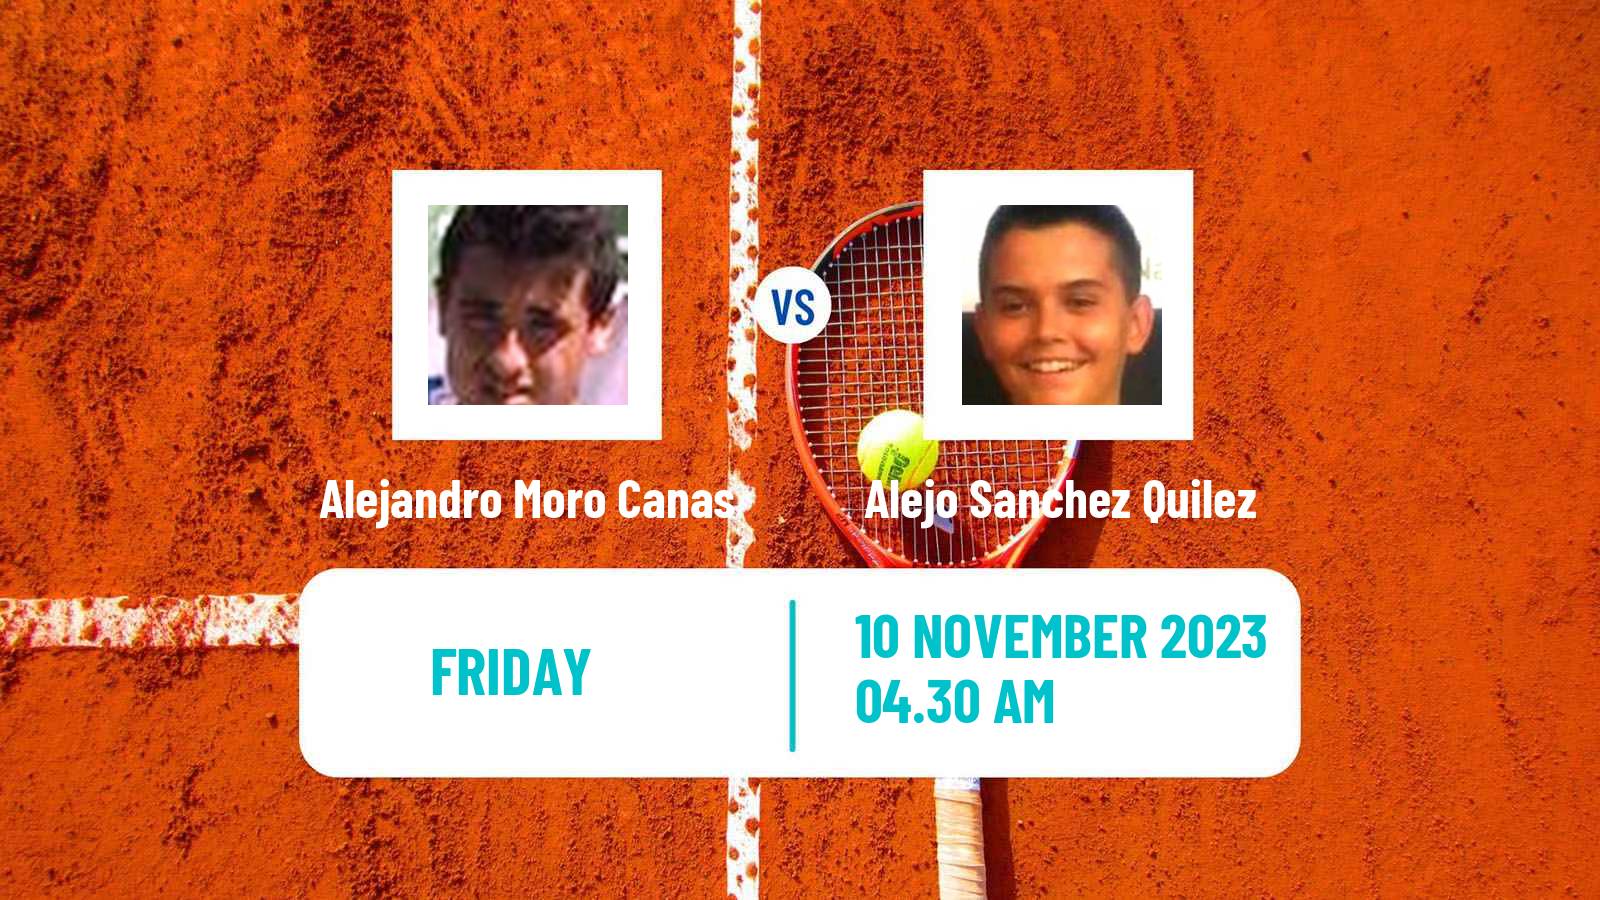 Tennis ITF M25 Benicarlo Men Alejandro Moro Canas - Alejo Sanchez Quilez